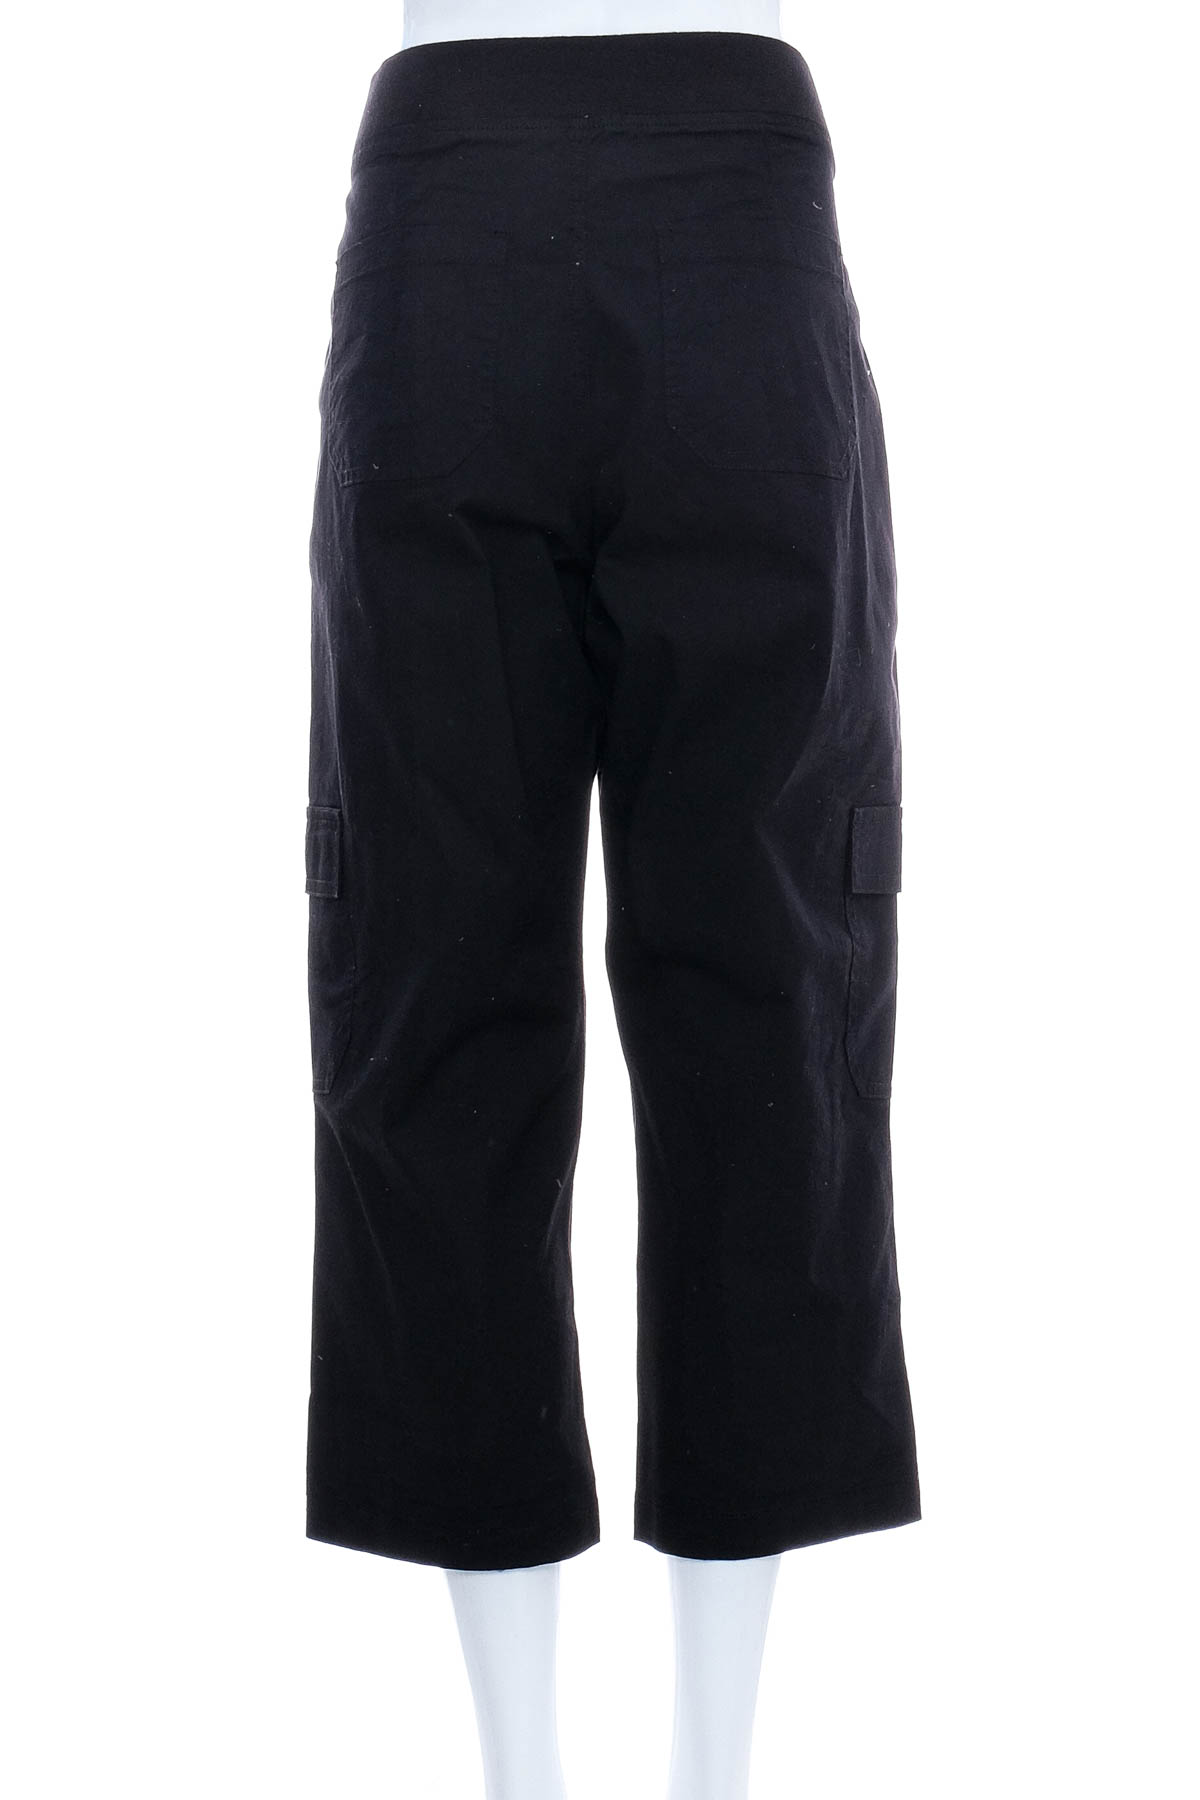 Women's trousers - Target - 1